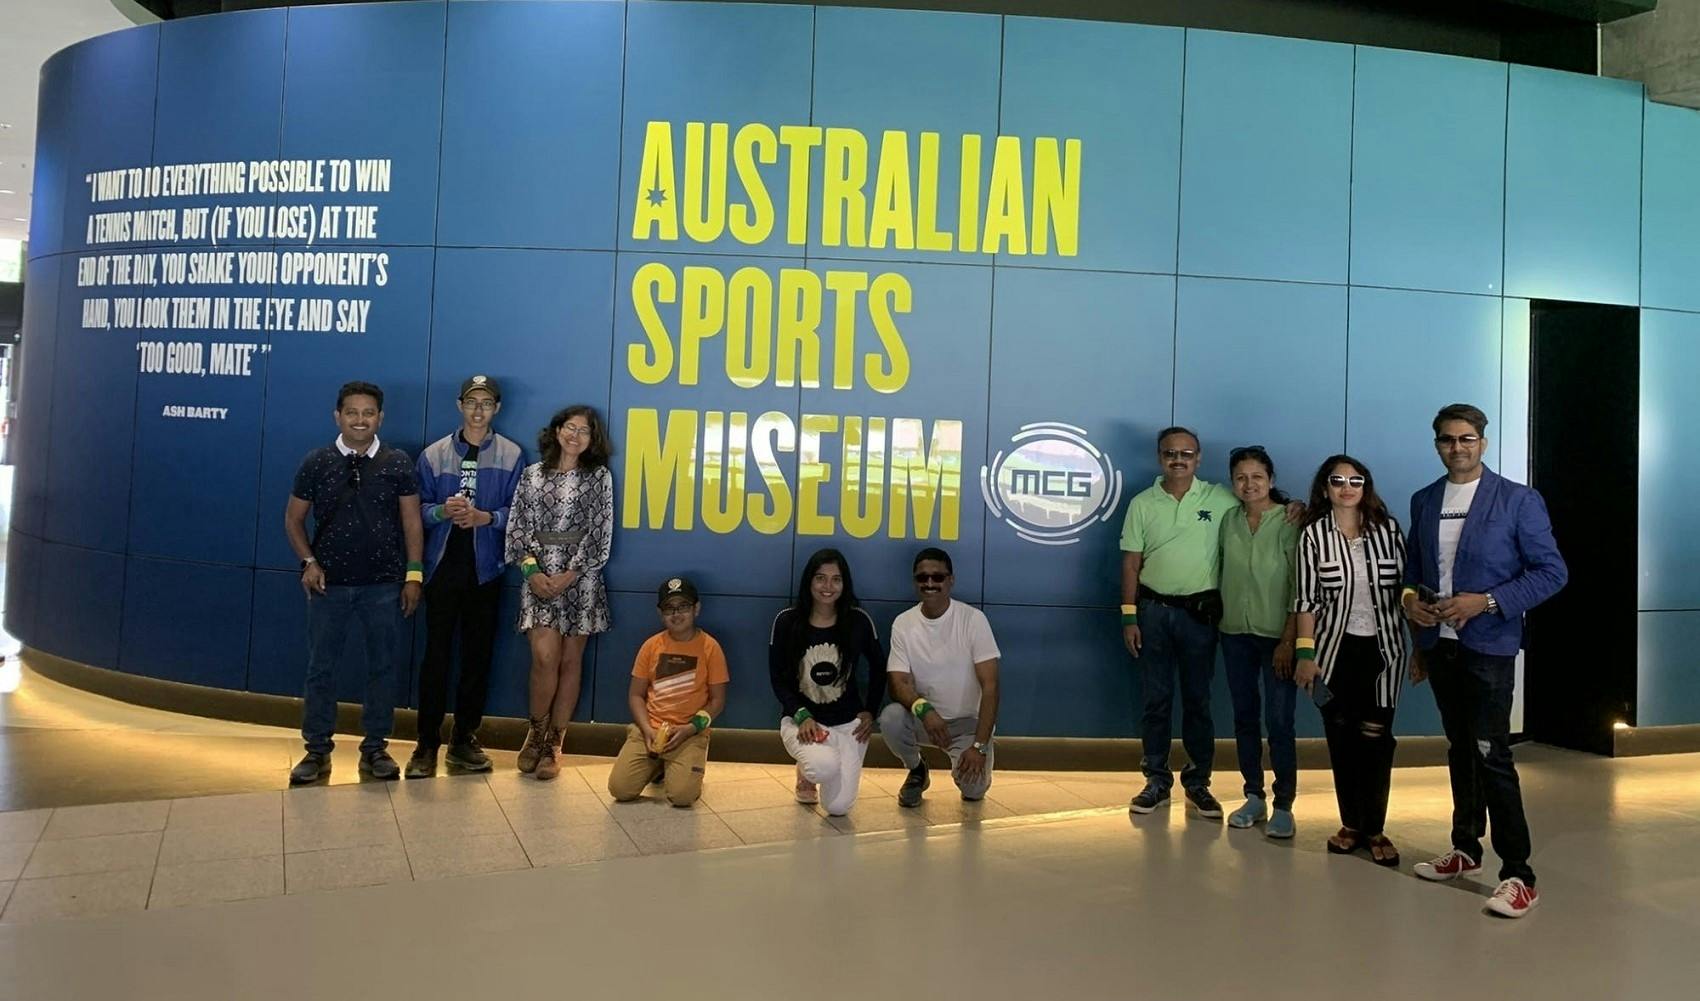 Melbourne sports precinct tour & Sports Museum Musement